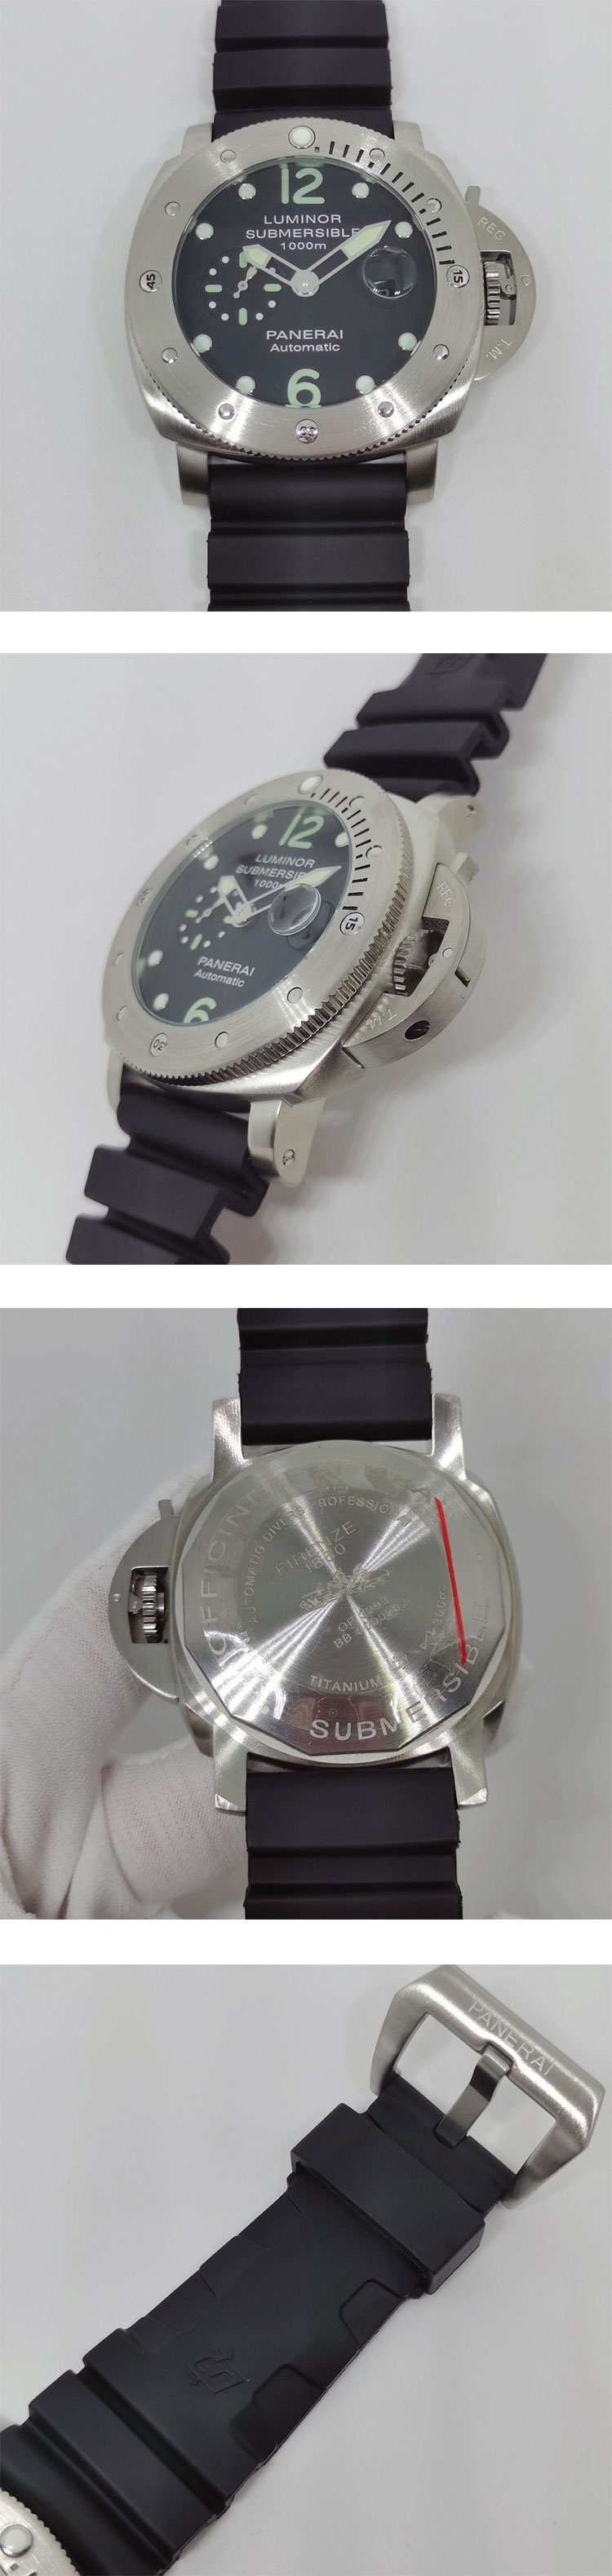 パネライスーパーコピー時計 ルミノール サブマーシブル デイト 自動巻き PAM00243-1